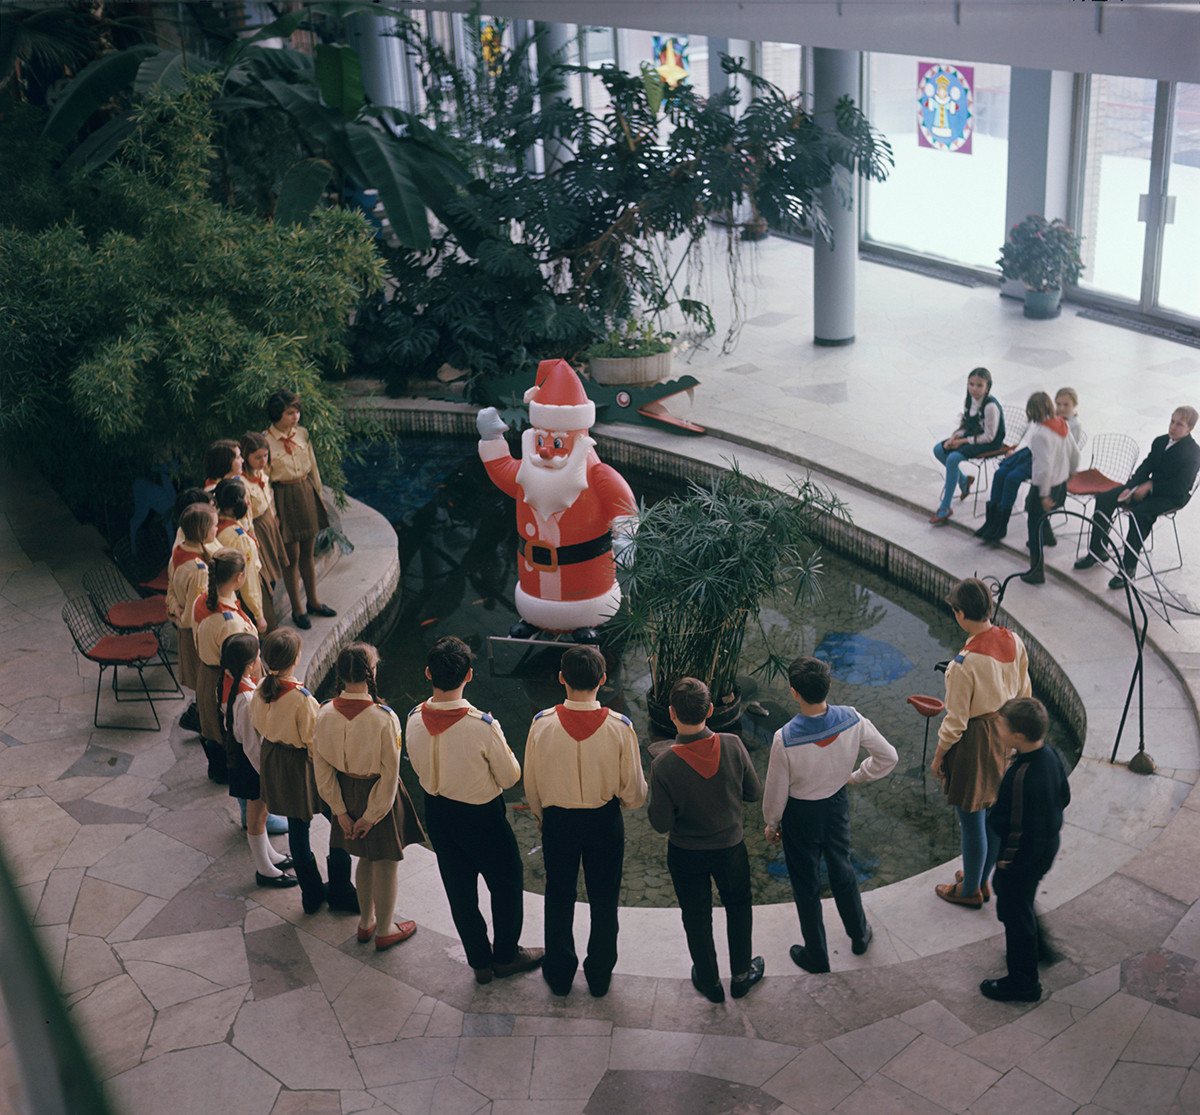 De nombreux enfants comptaient sur le Père Noël soviétique pour réaliser leurs souhaits.